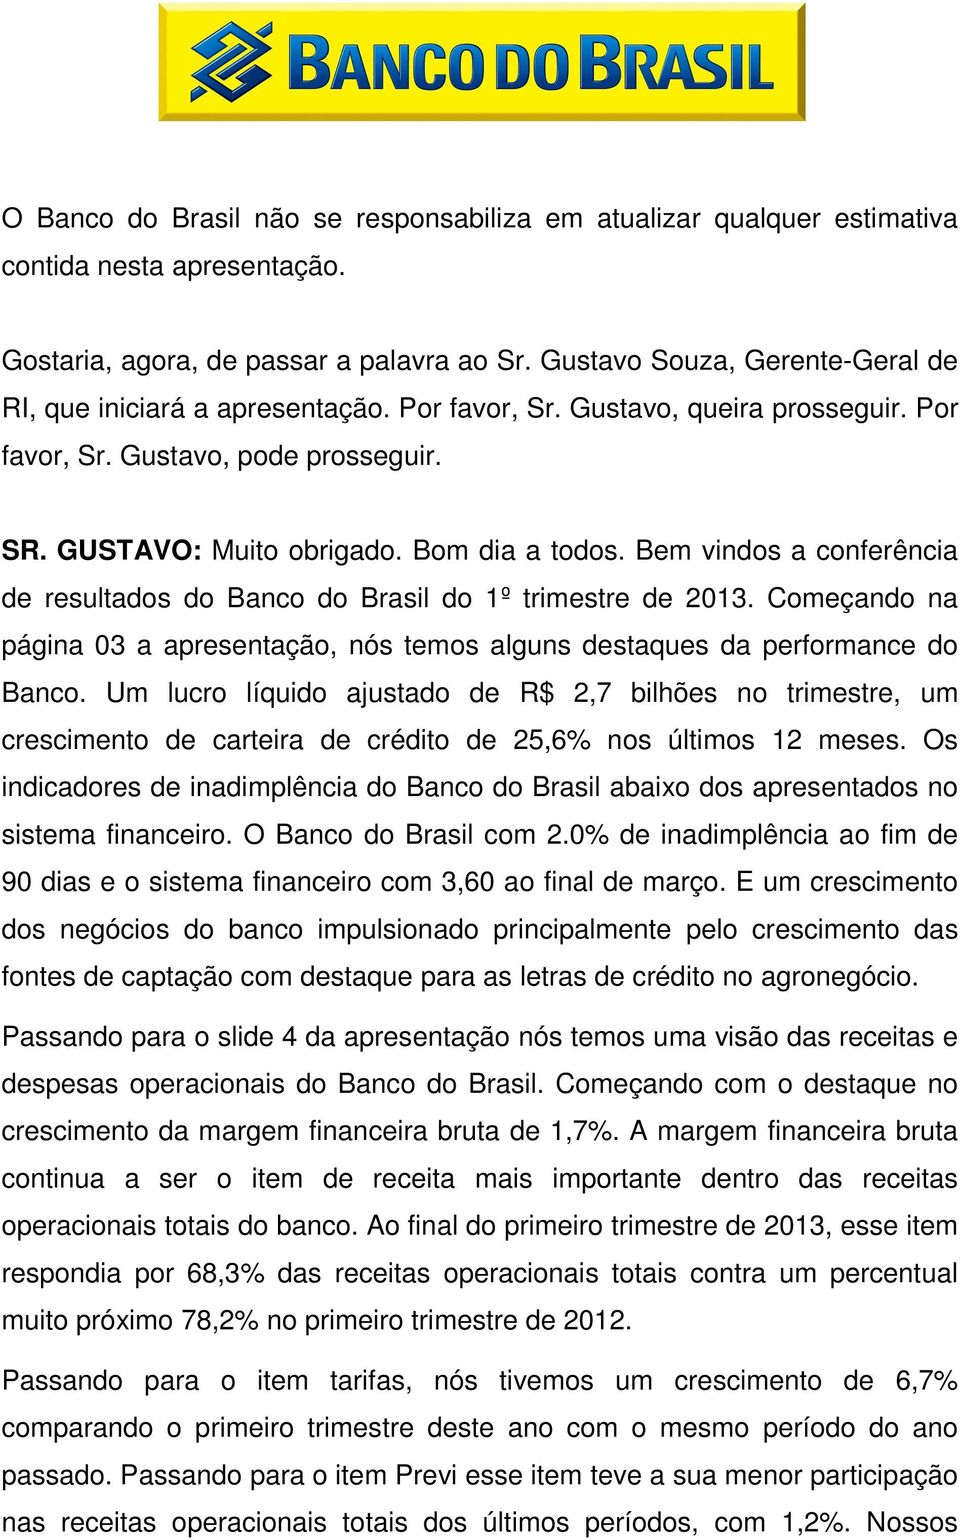 Bem vindos a conferência de resultados do Banco do Brasil do 1º trimestre de 2013. Começando na página 03 a apresentação, nós temos alguns destaques da performance do Banco.